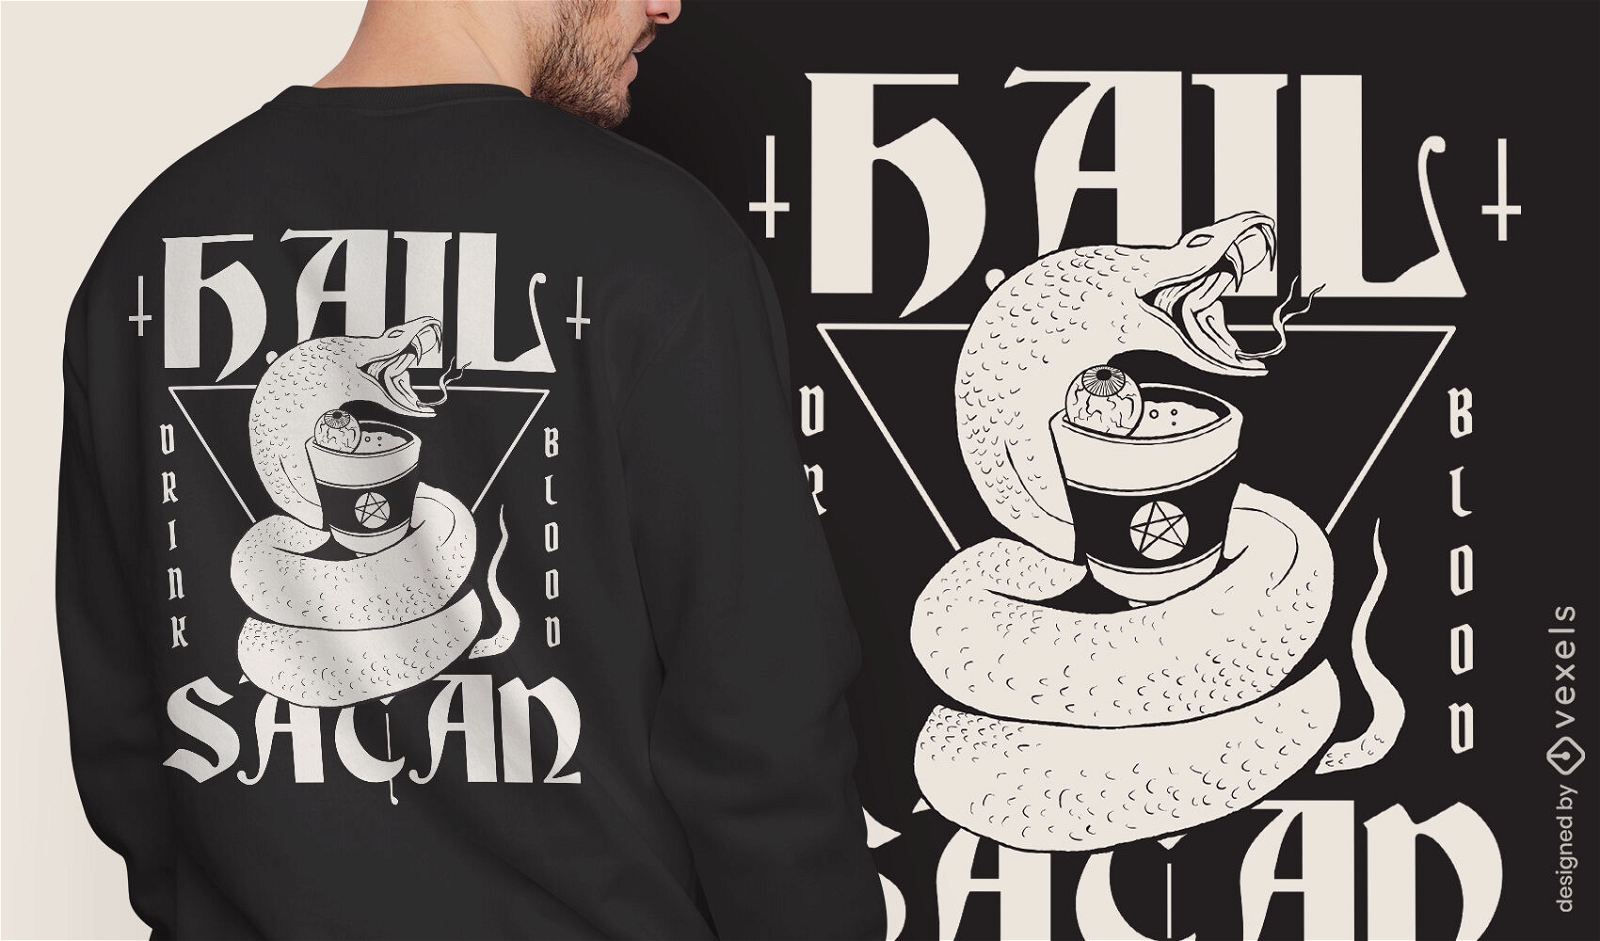 Satanist snake t-shirt design